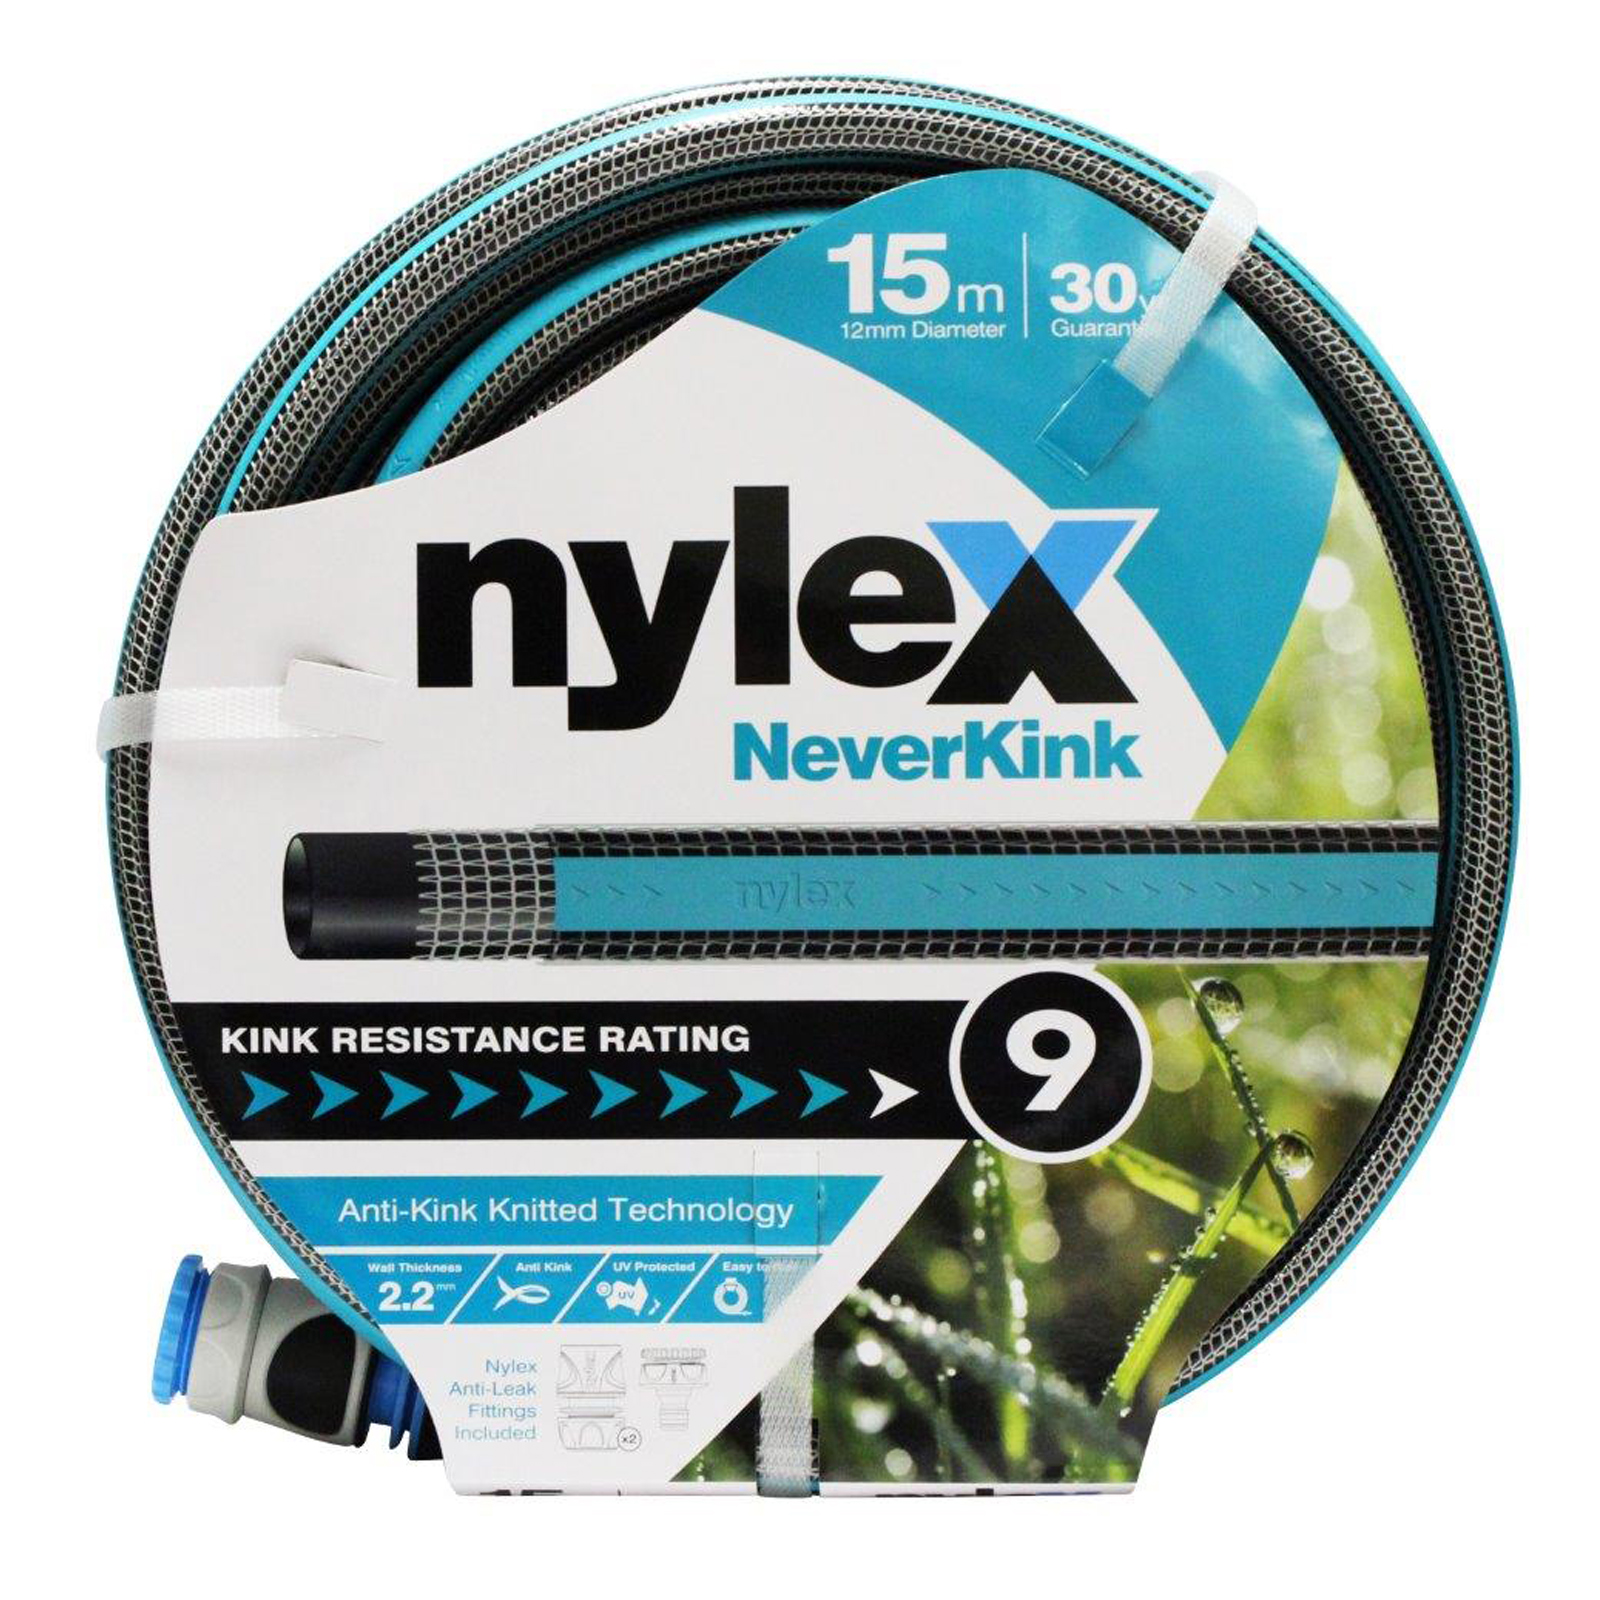 Nylex NeverKink 12mm x 15m Garden Hose